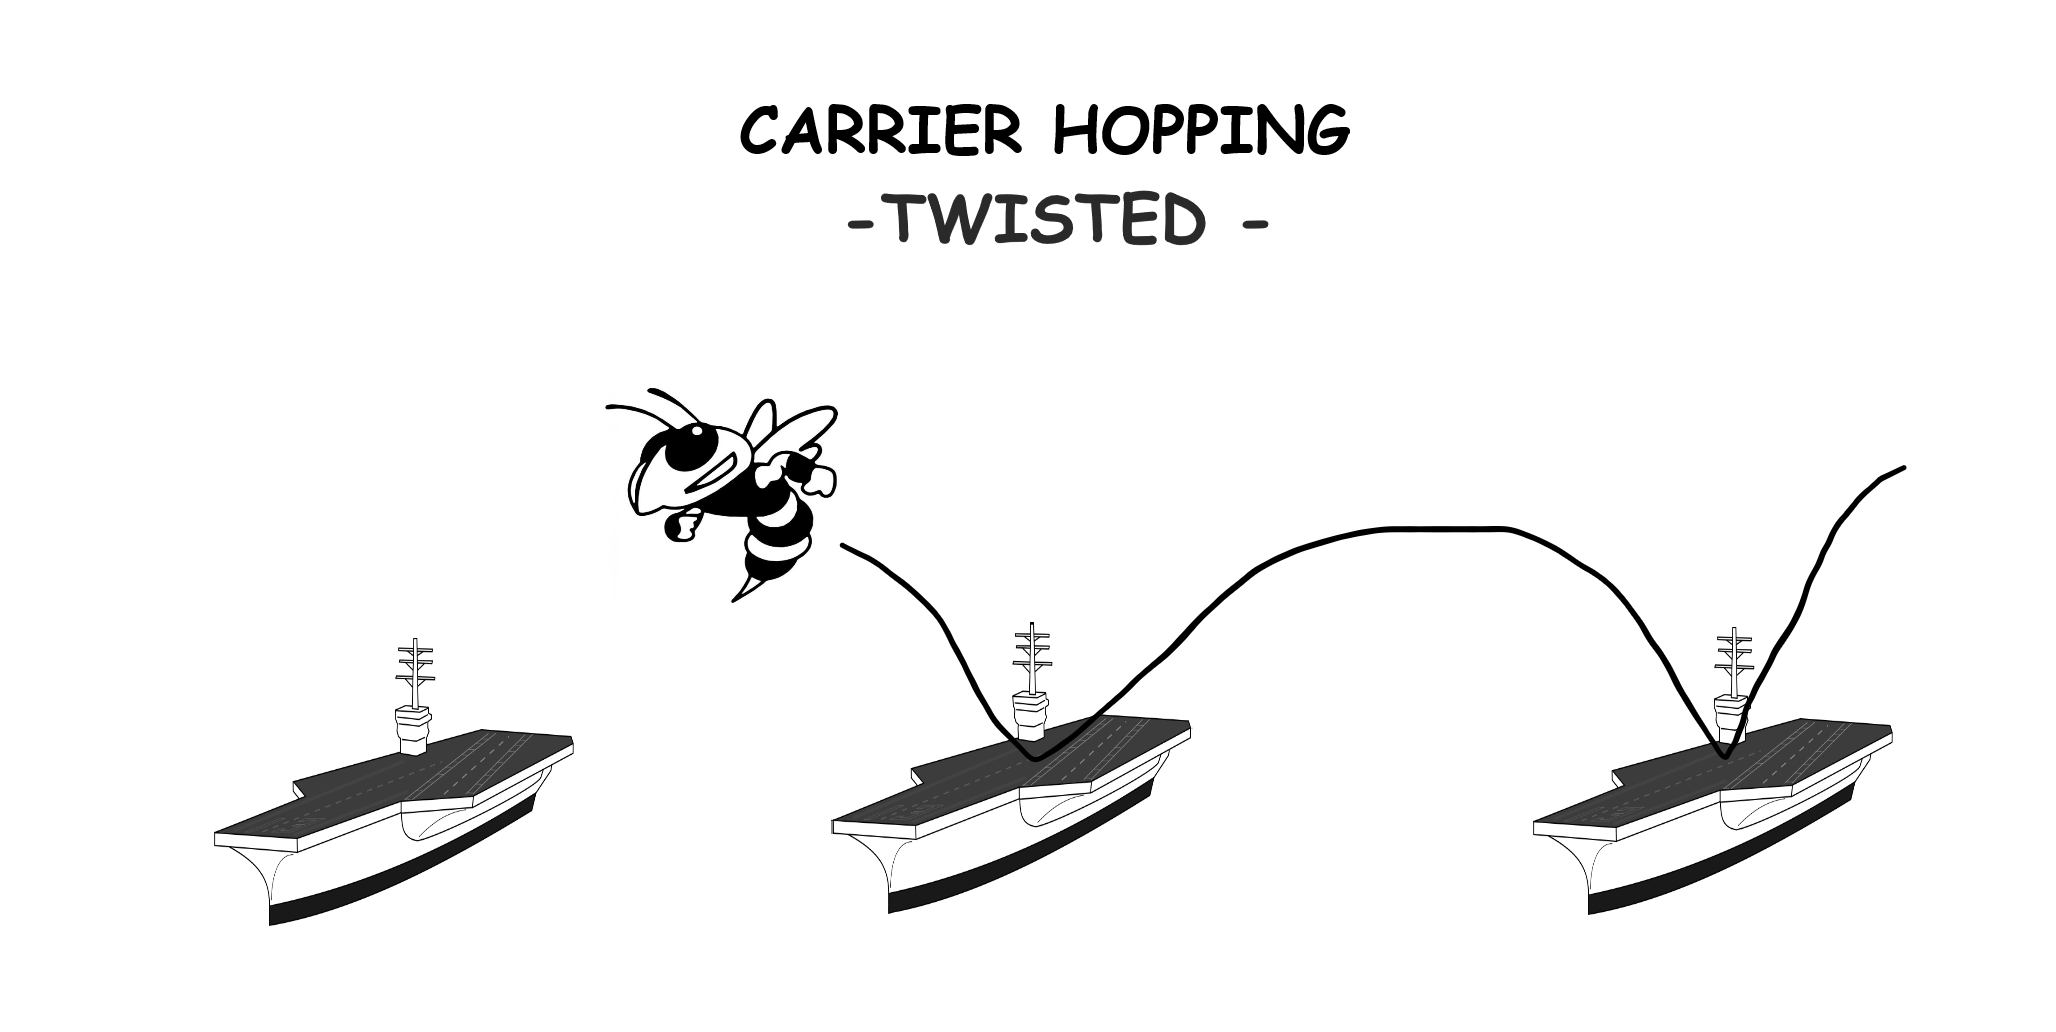 F-18 Carrier hopping - Slalom